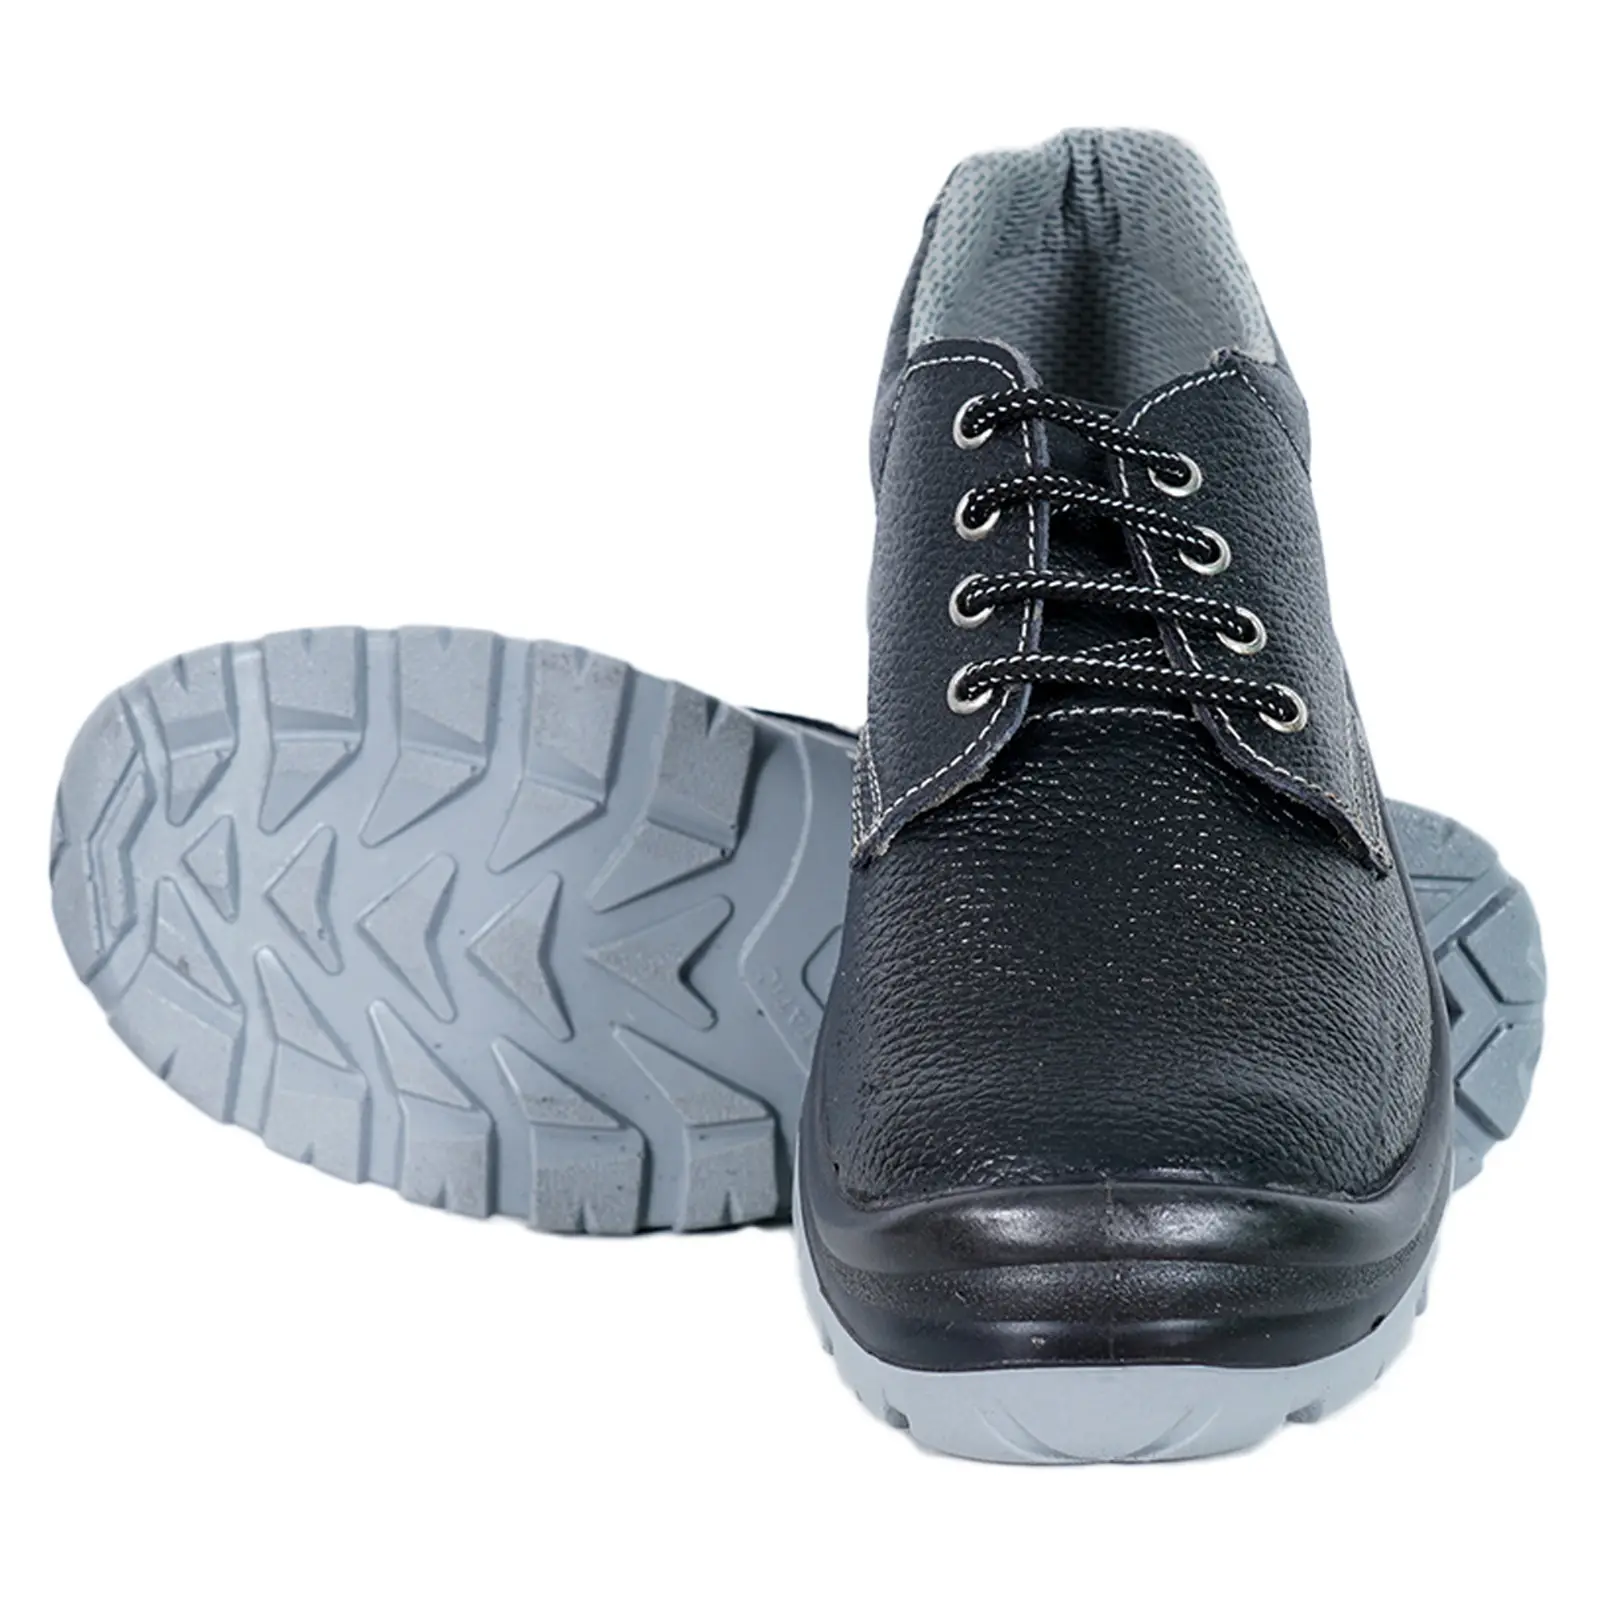 حذاء للأمان لأداء المهام الشاقة مع طرف معدني لمنع التزحلق لأغراض البناء والعمل على التعدين واللحام الصناعي للعناية بالقدم مريح